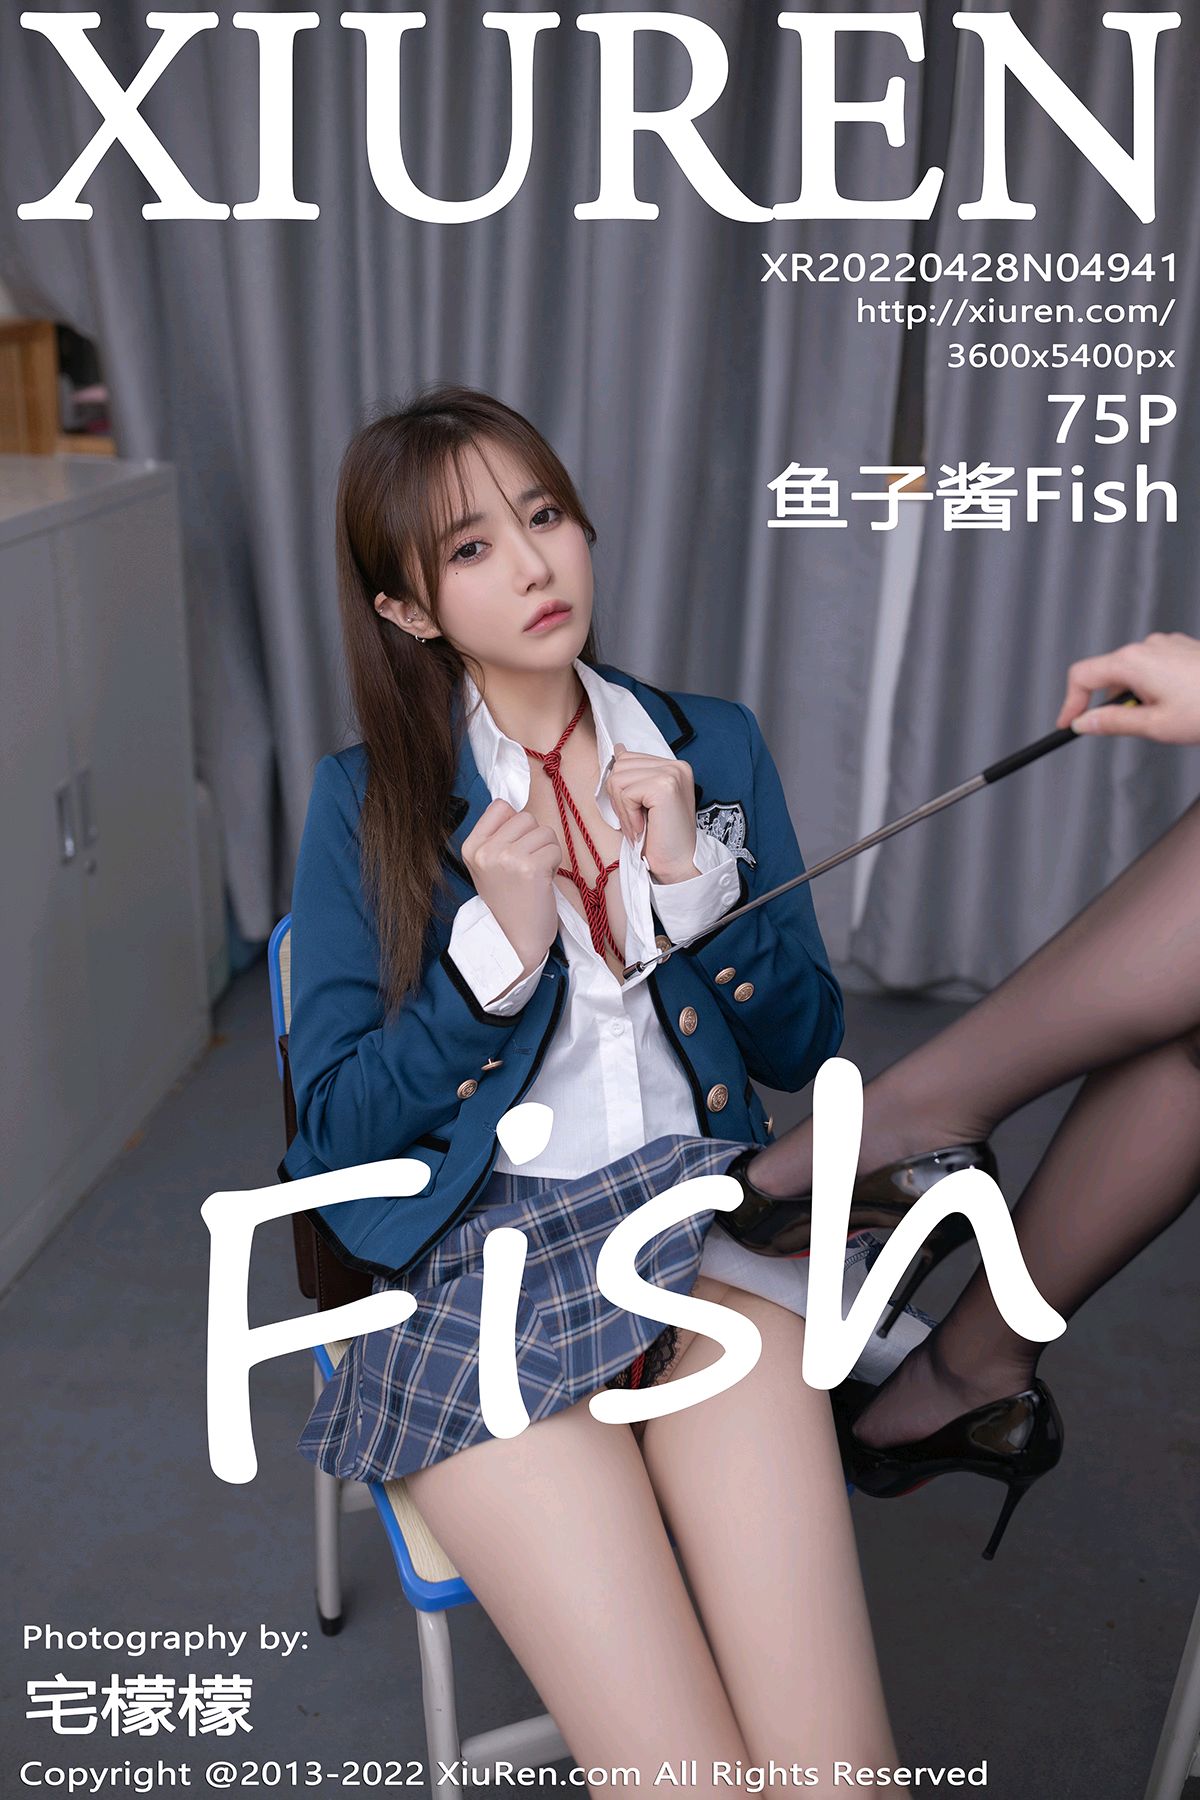 [XiuRen秀人网] 2022.04.28 No.4941 鱼子酱Fish [75+1P]